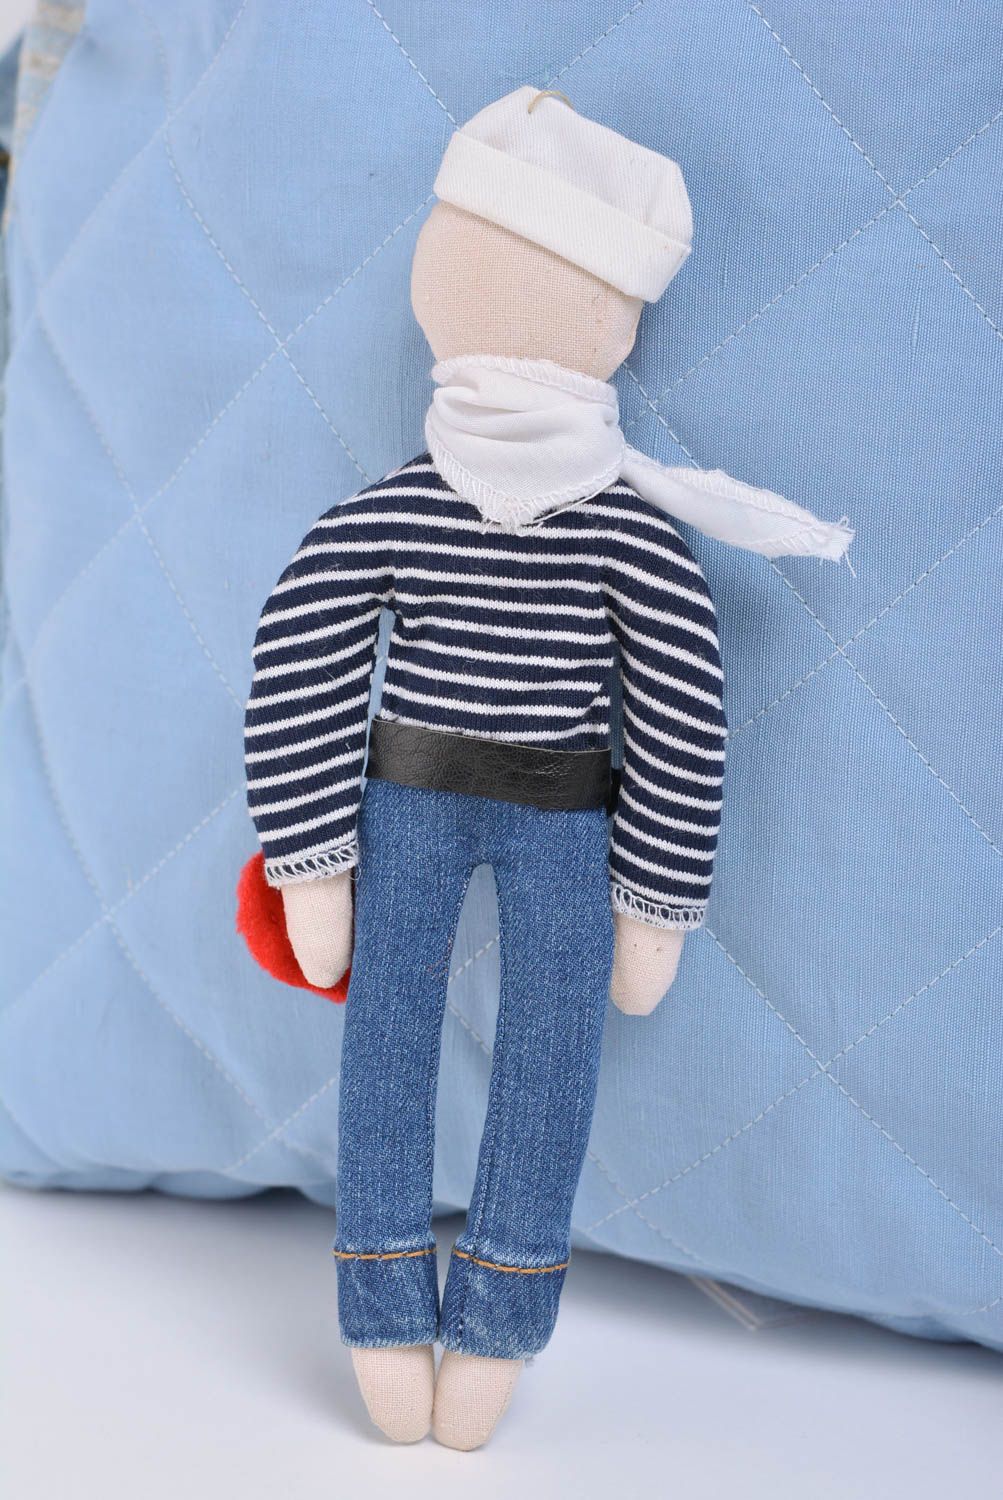 Мягкая игрушка моряк из ткани ручной работы красивая для интерьера авторская фото 3